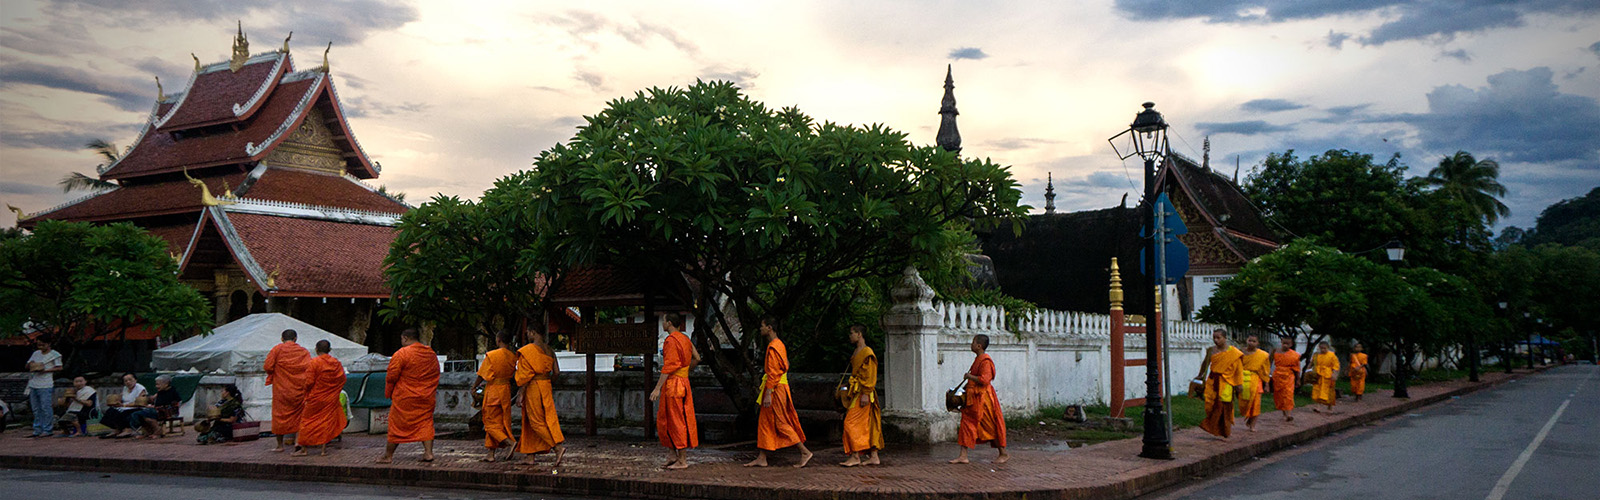 Viaggio Cambogia | Viaggio personalizzato in Cambogia | ilotustours.com